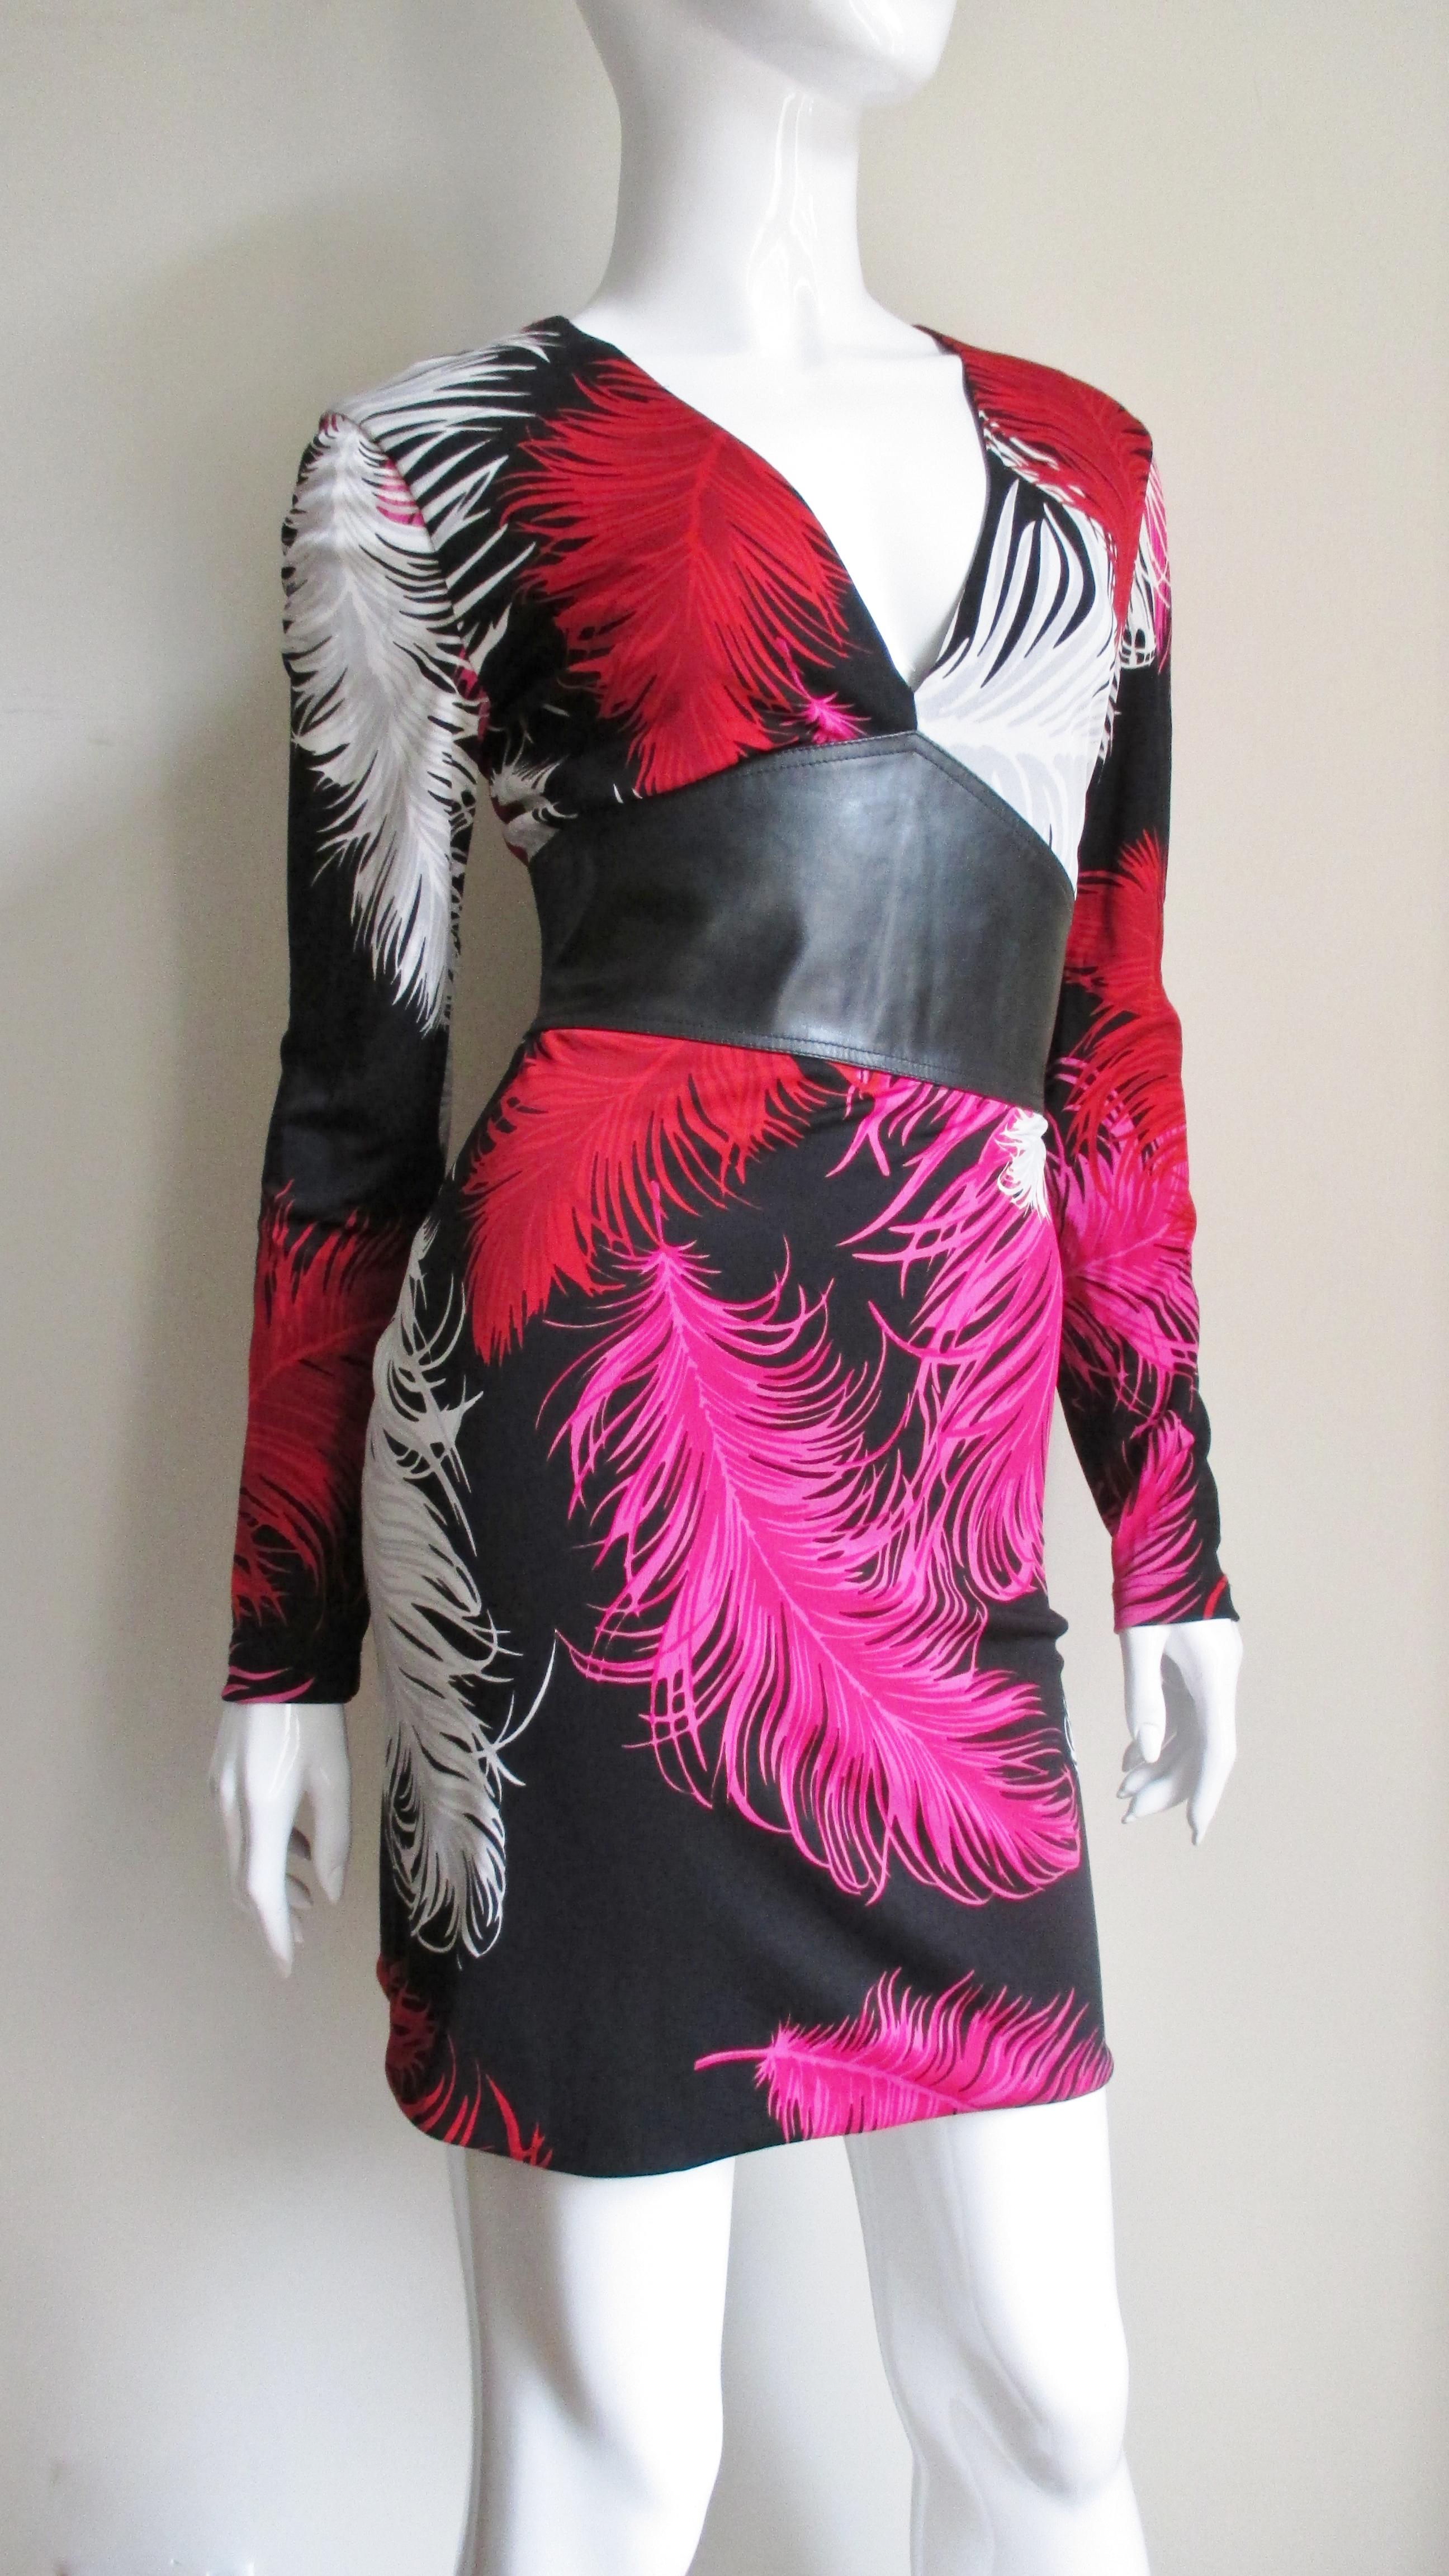 Une superbe robe en jersey de soie de Gianni Versace Couture dans un imprimé de plumes rose vif, rouge, blanc et gris sur noir.  Il a des manches longues et un décolleté en V qui rejoint un large empiècement en cuir noir autour de la taille qui se